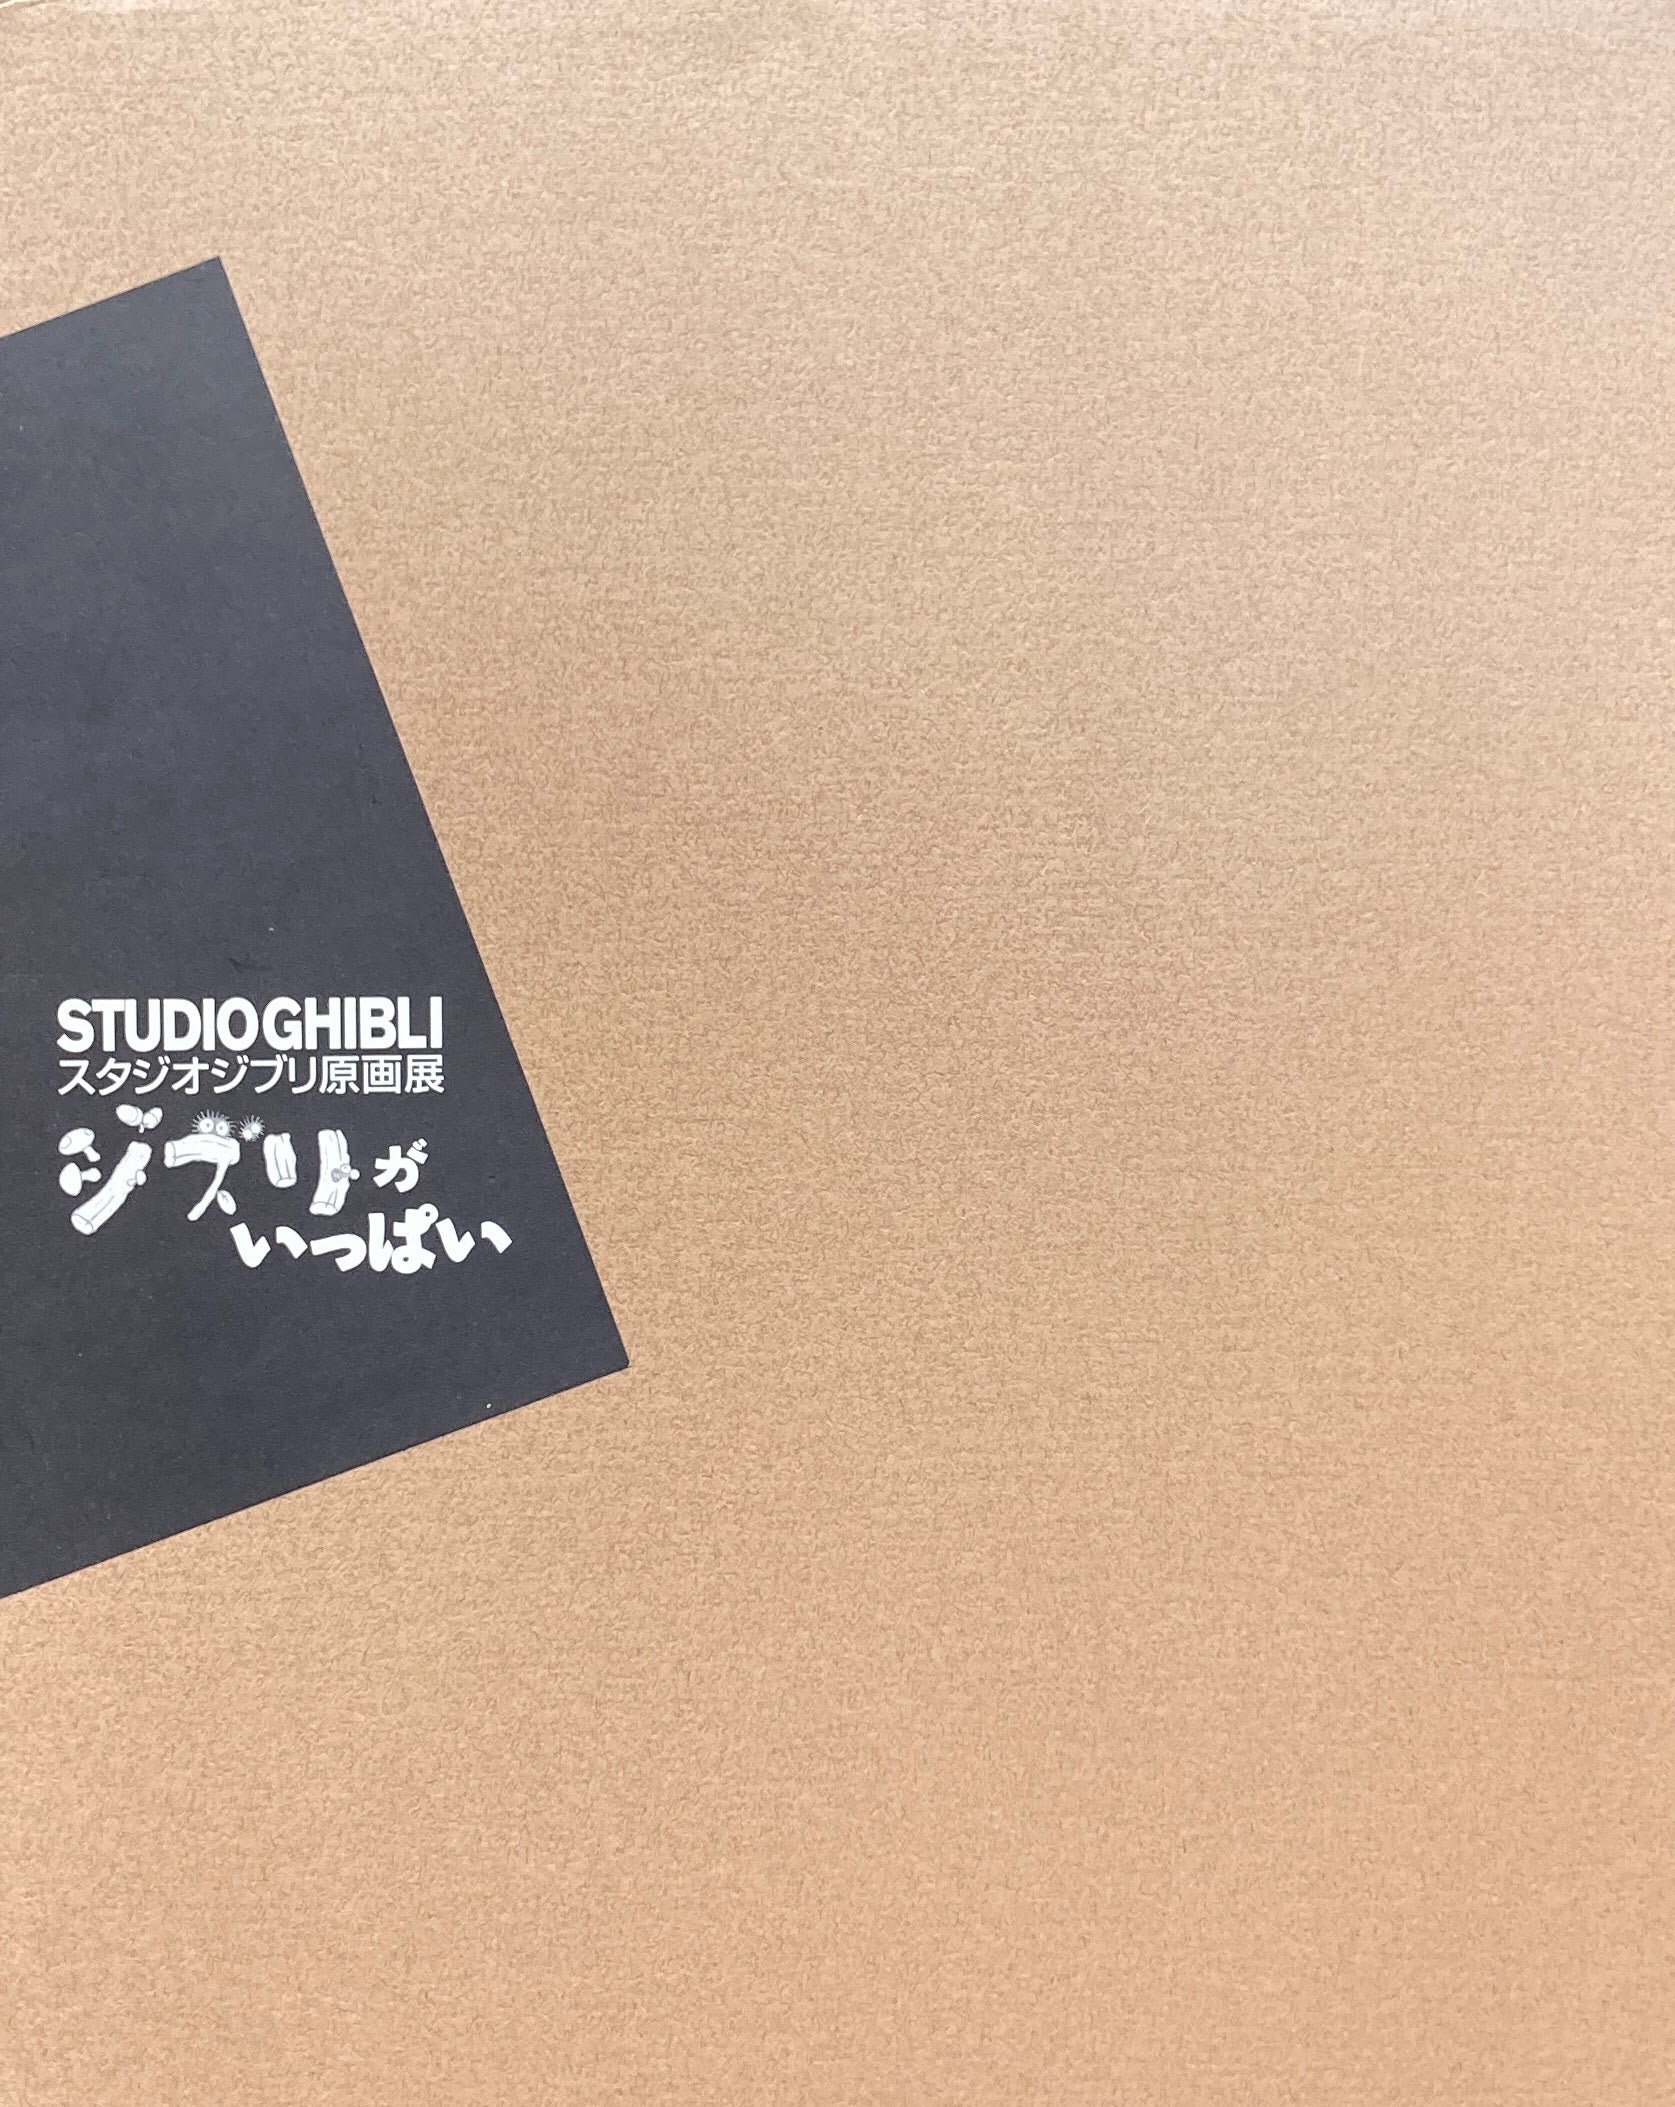 スタジオジブリ原画展 ジブリがいっぱい – smokebooks shop